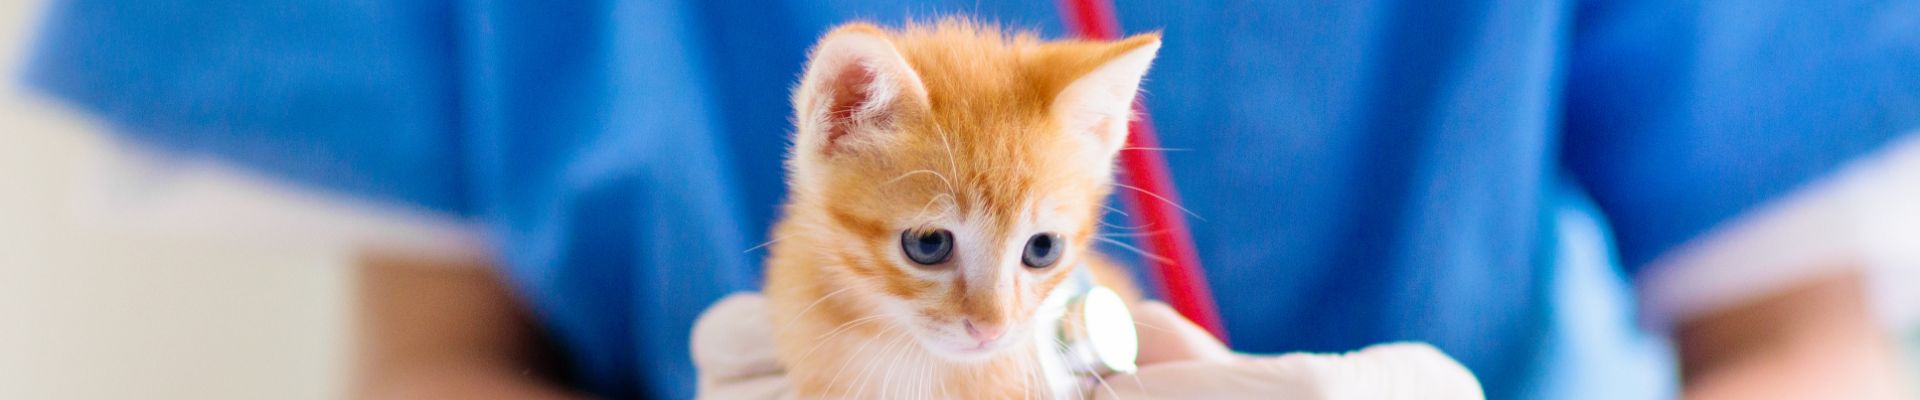 veterinario revisando la frecuencia cardíaca de un gatito naranja